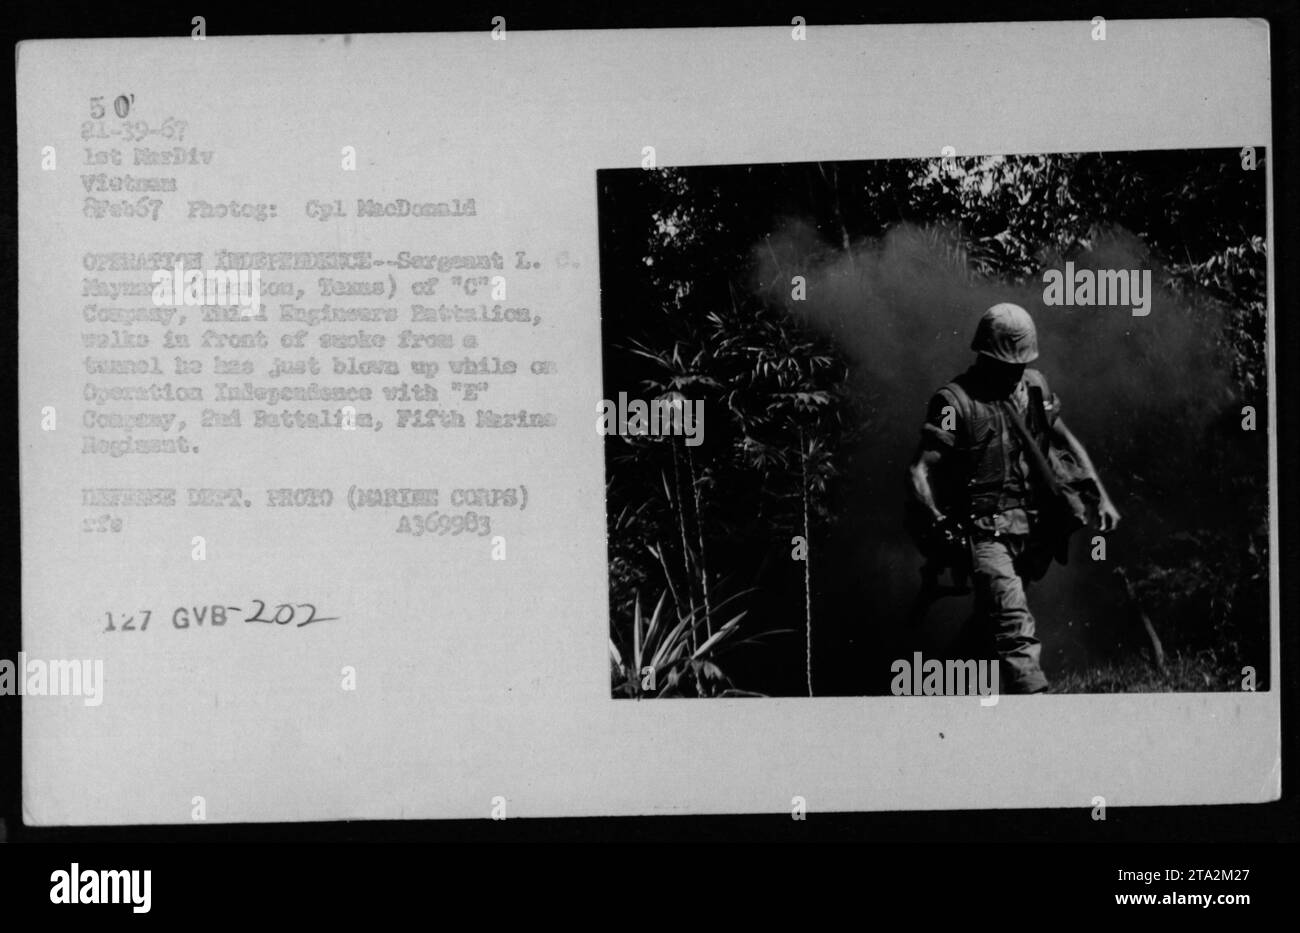 Sergeant L. C. Maymard aus Houston, Texas, von der C-Kompanie, Third Engineers Battalion, wird vor Rauch gesehen, der durch einen gesprengten Gunnol während der Operation Independence mit der 'E' Kompanie, 2. Bataillon, 5. Marine-Regiment in Vietnam verursacht wurde. Das Foto wurde am 8. Februar 1967 aufgenommen. Stockfoto